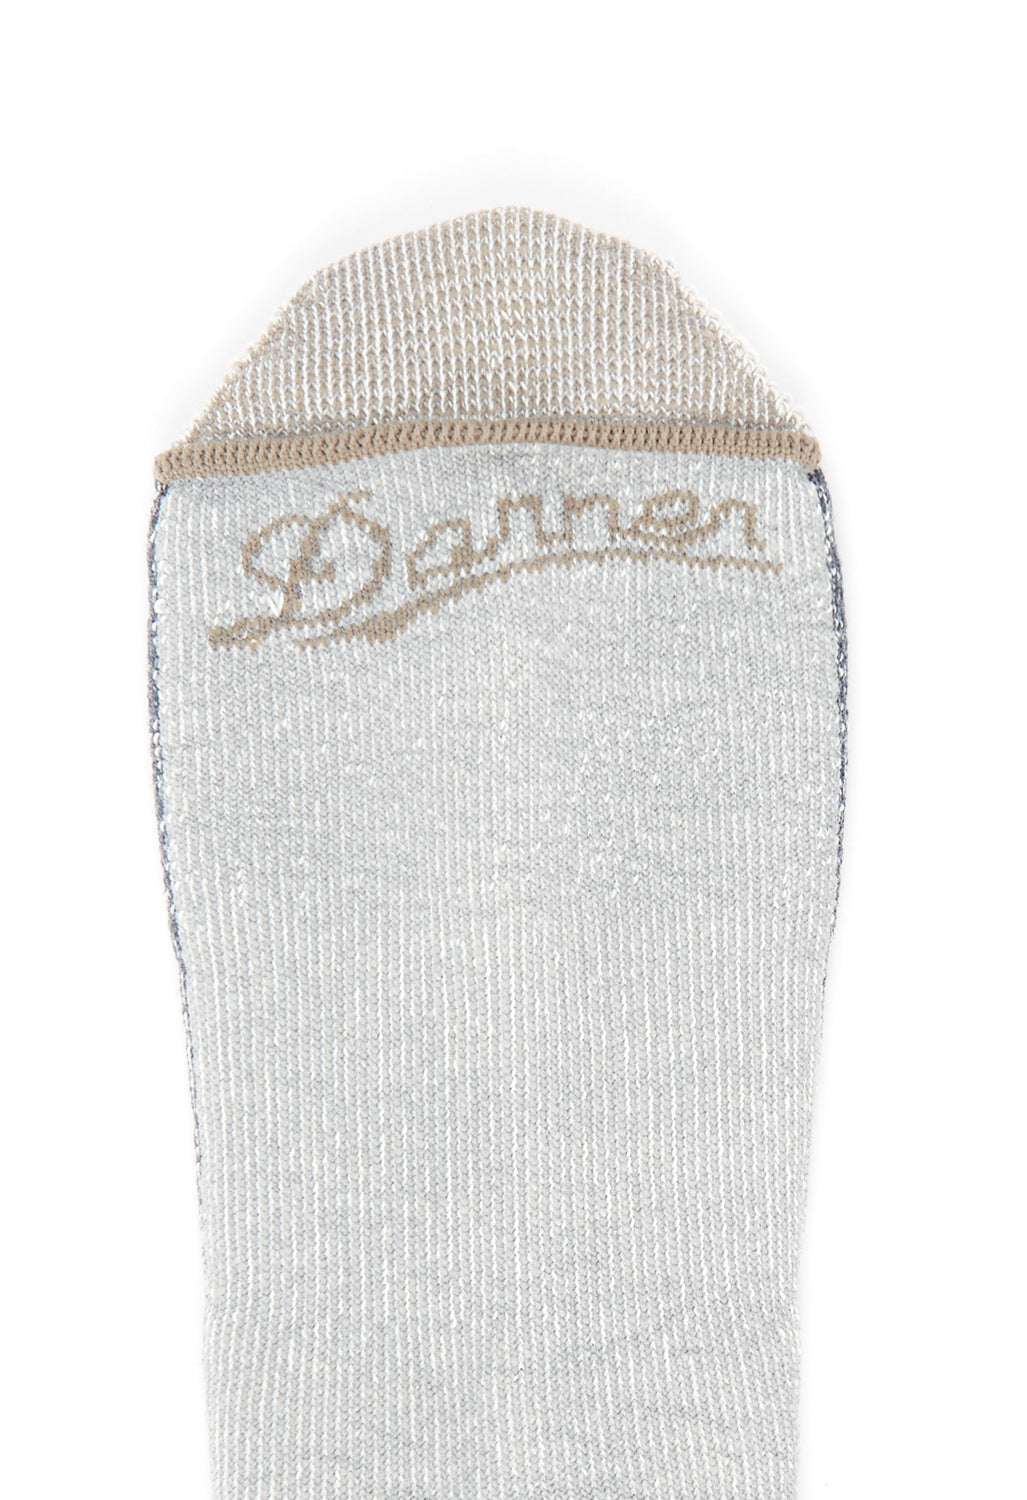 Danner Evergreen Socks - Graphite